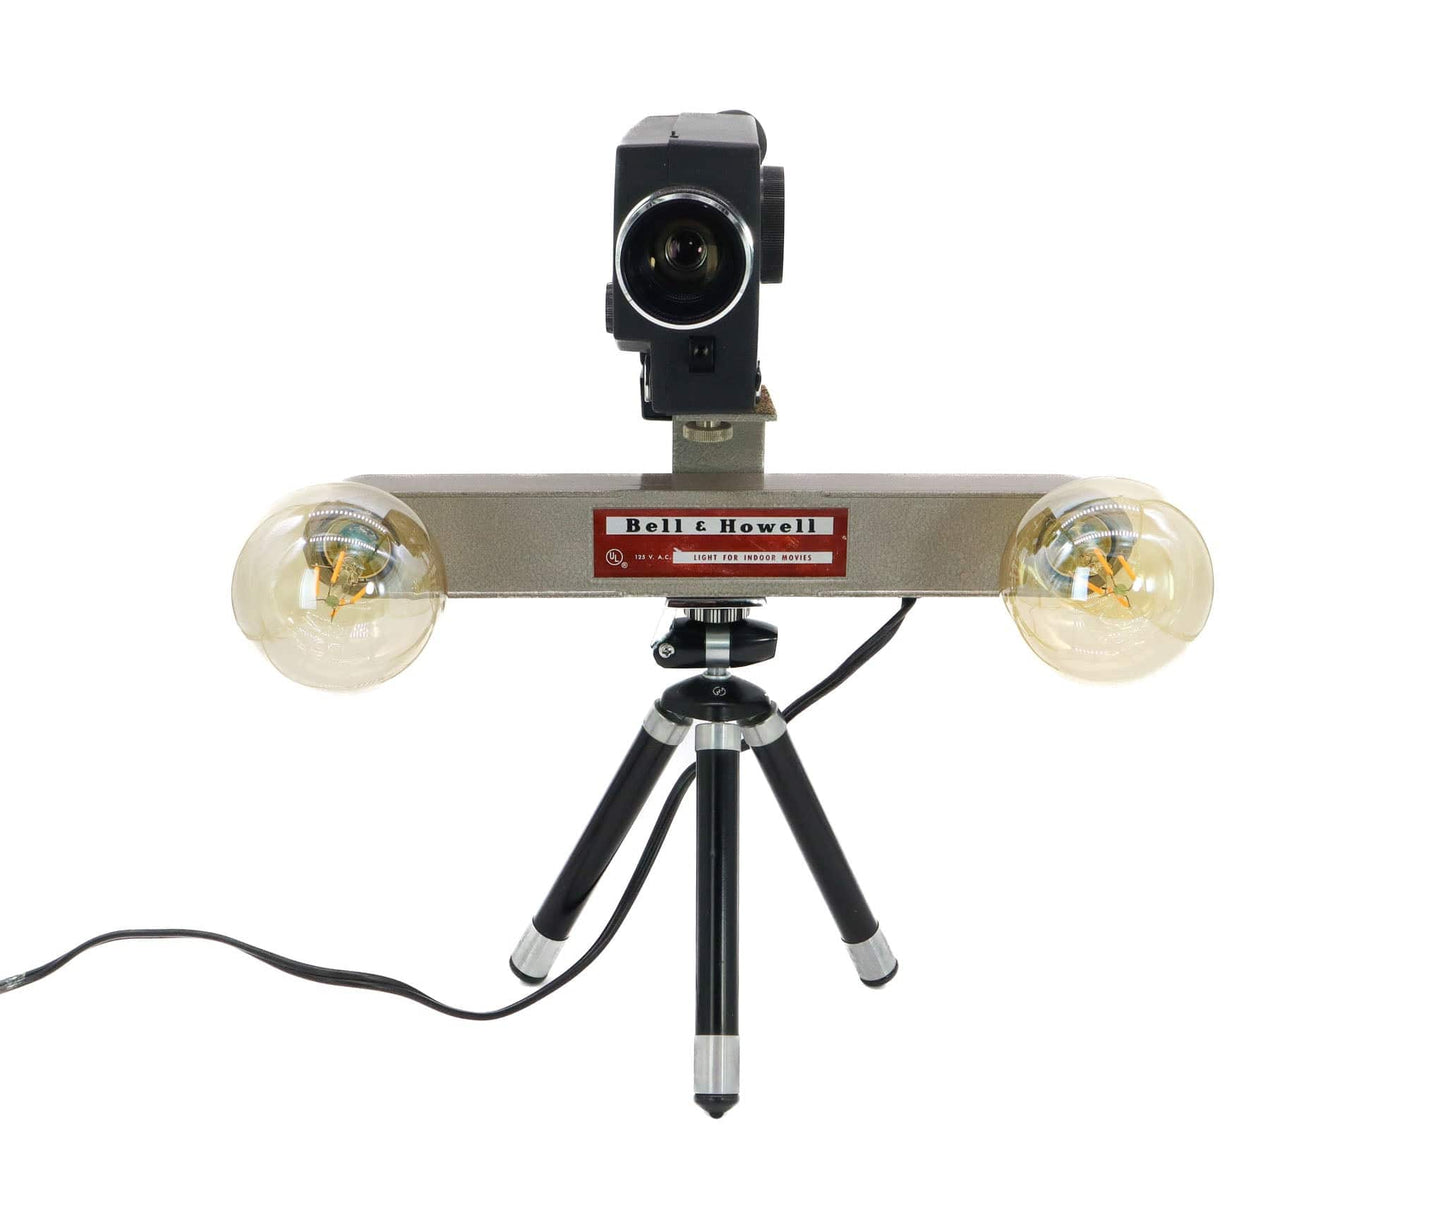 LightAndTimeArt Camera Lamp Movie Camera Lamp - 1960's 8mm Kodak Camera & Bell & Howell Light Bar on Vintage Tripod